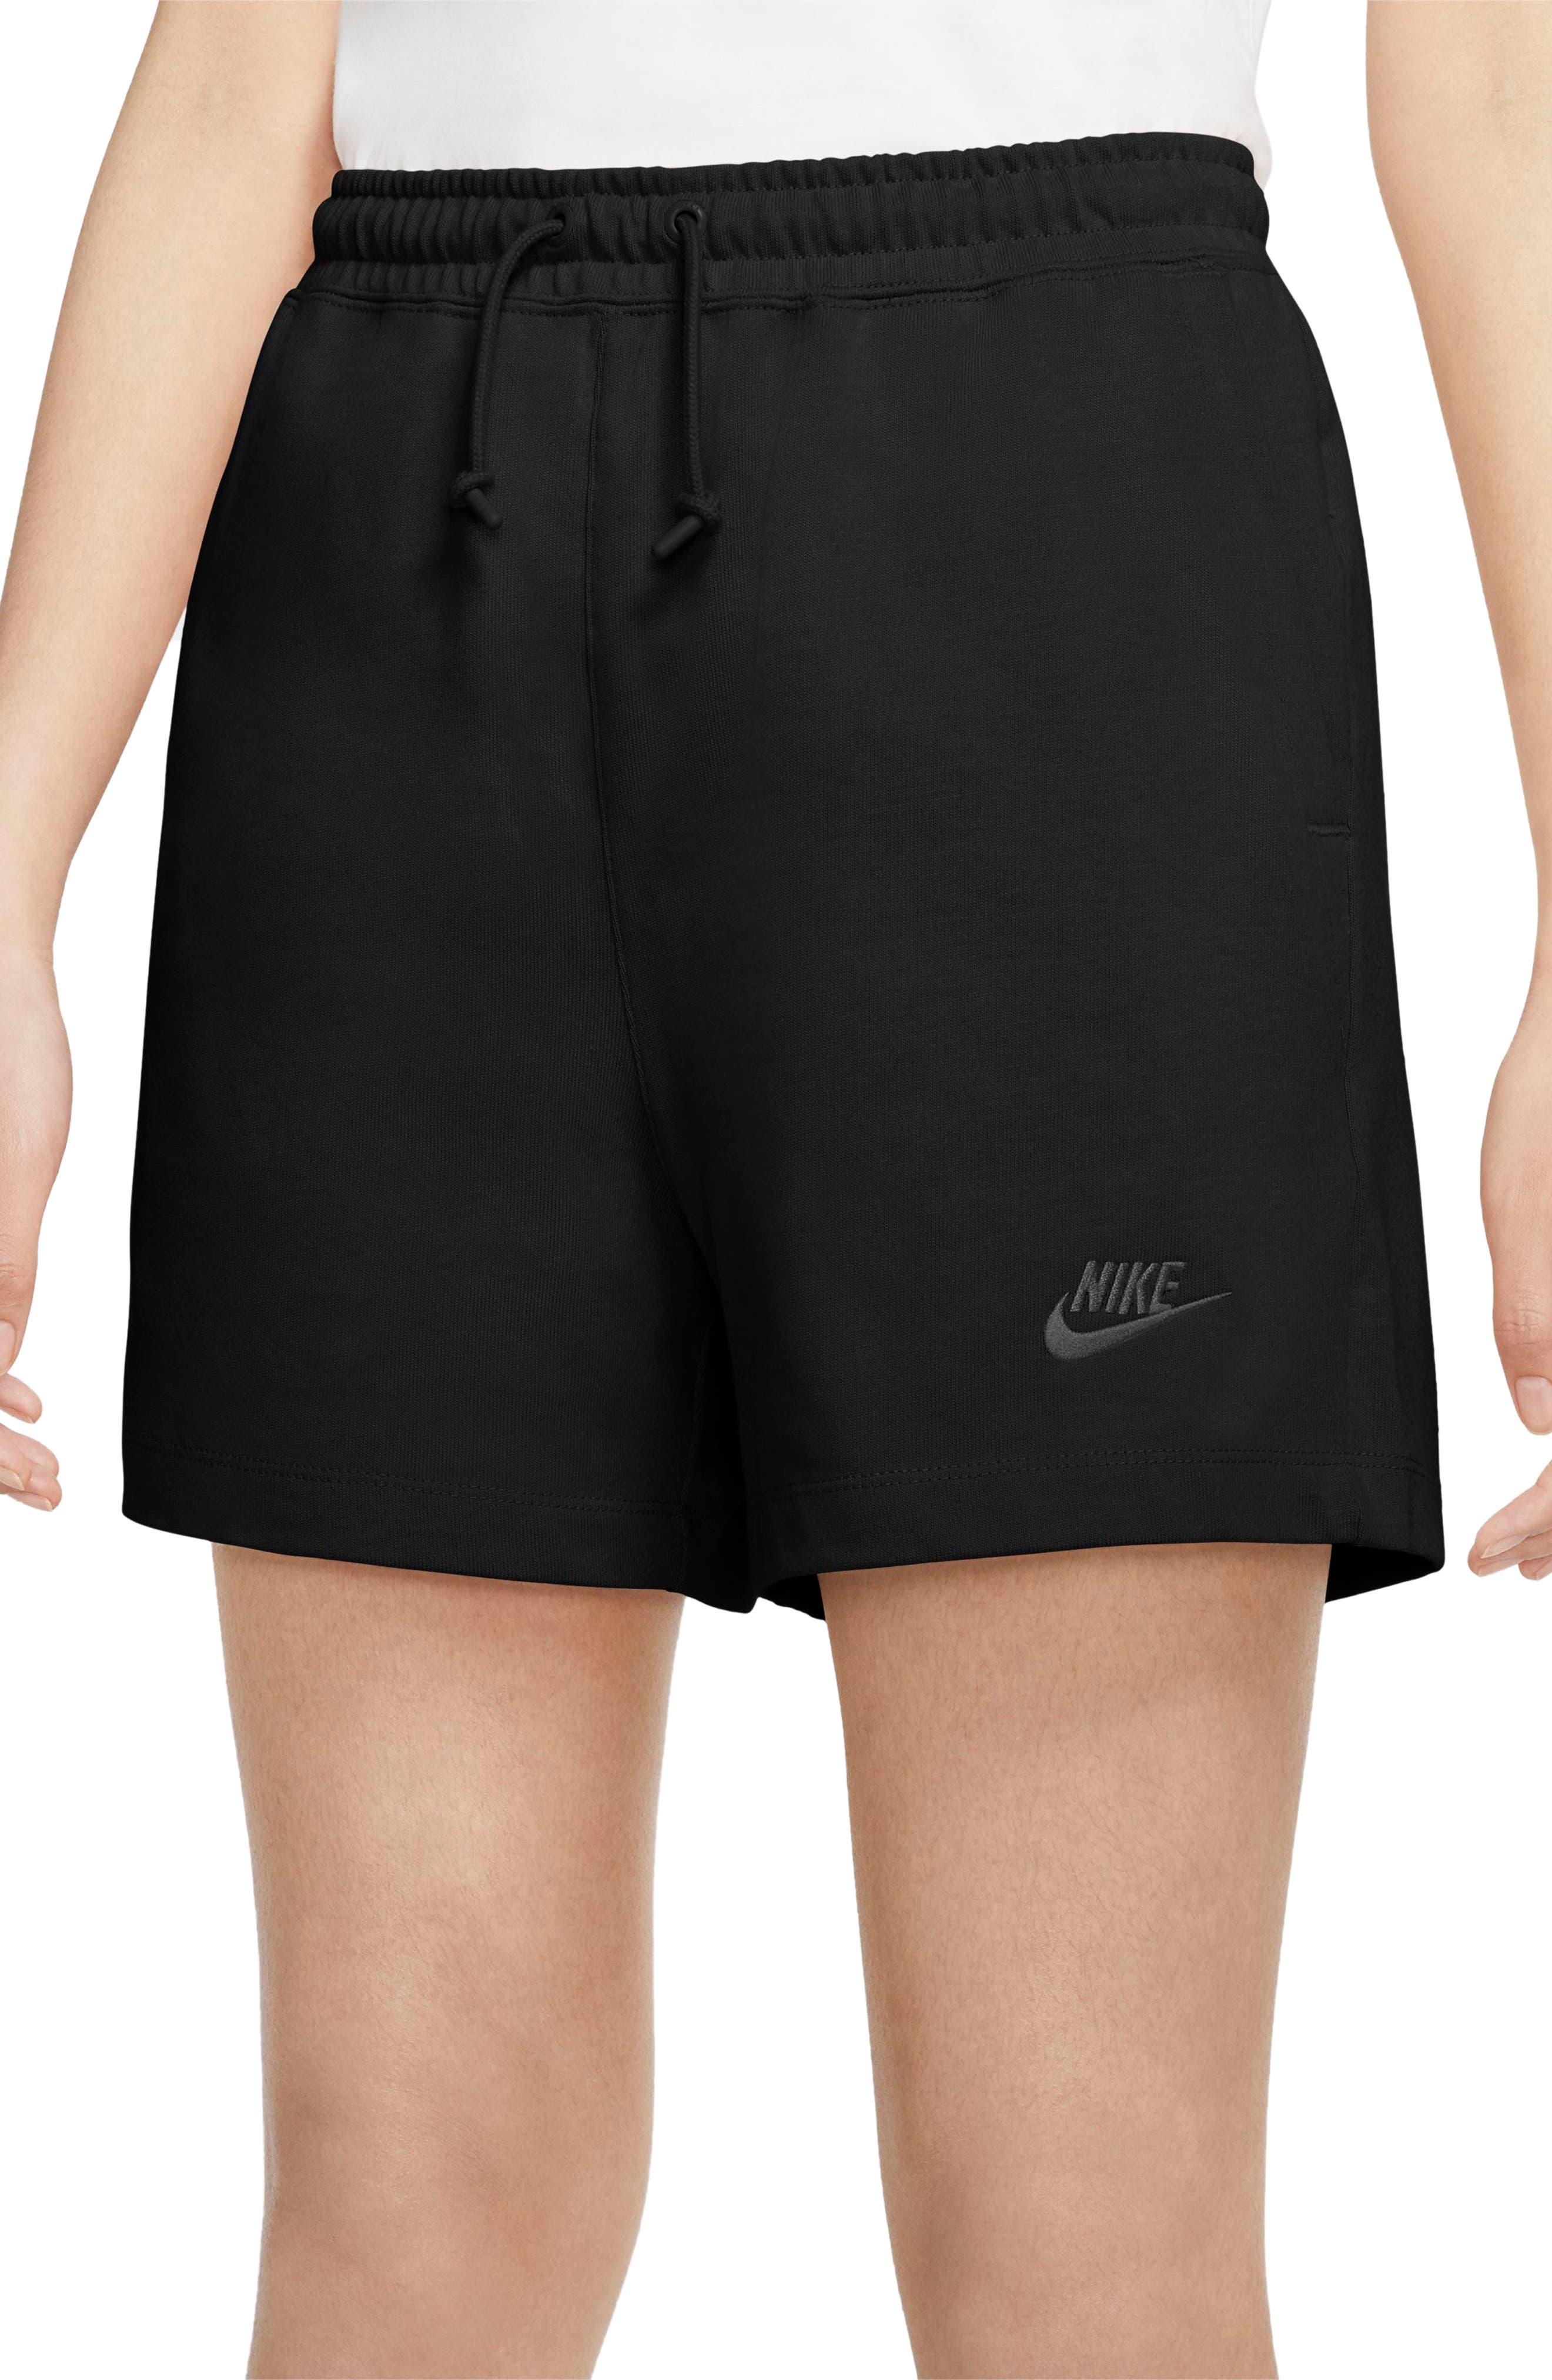 nike jersey shorts women's